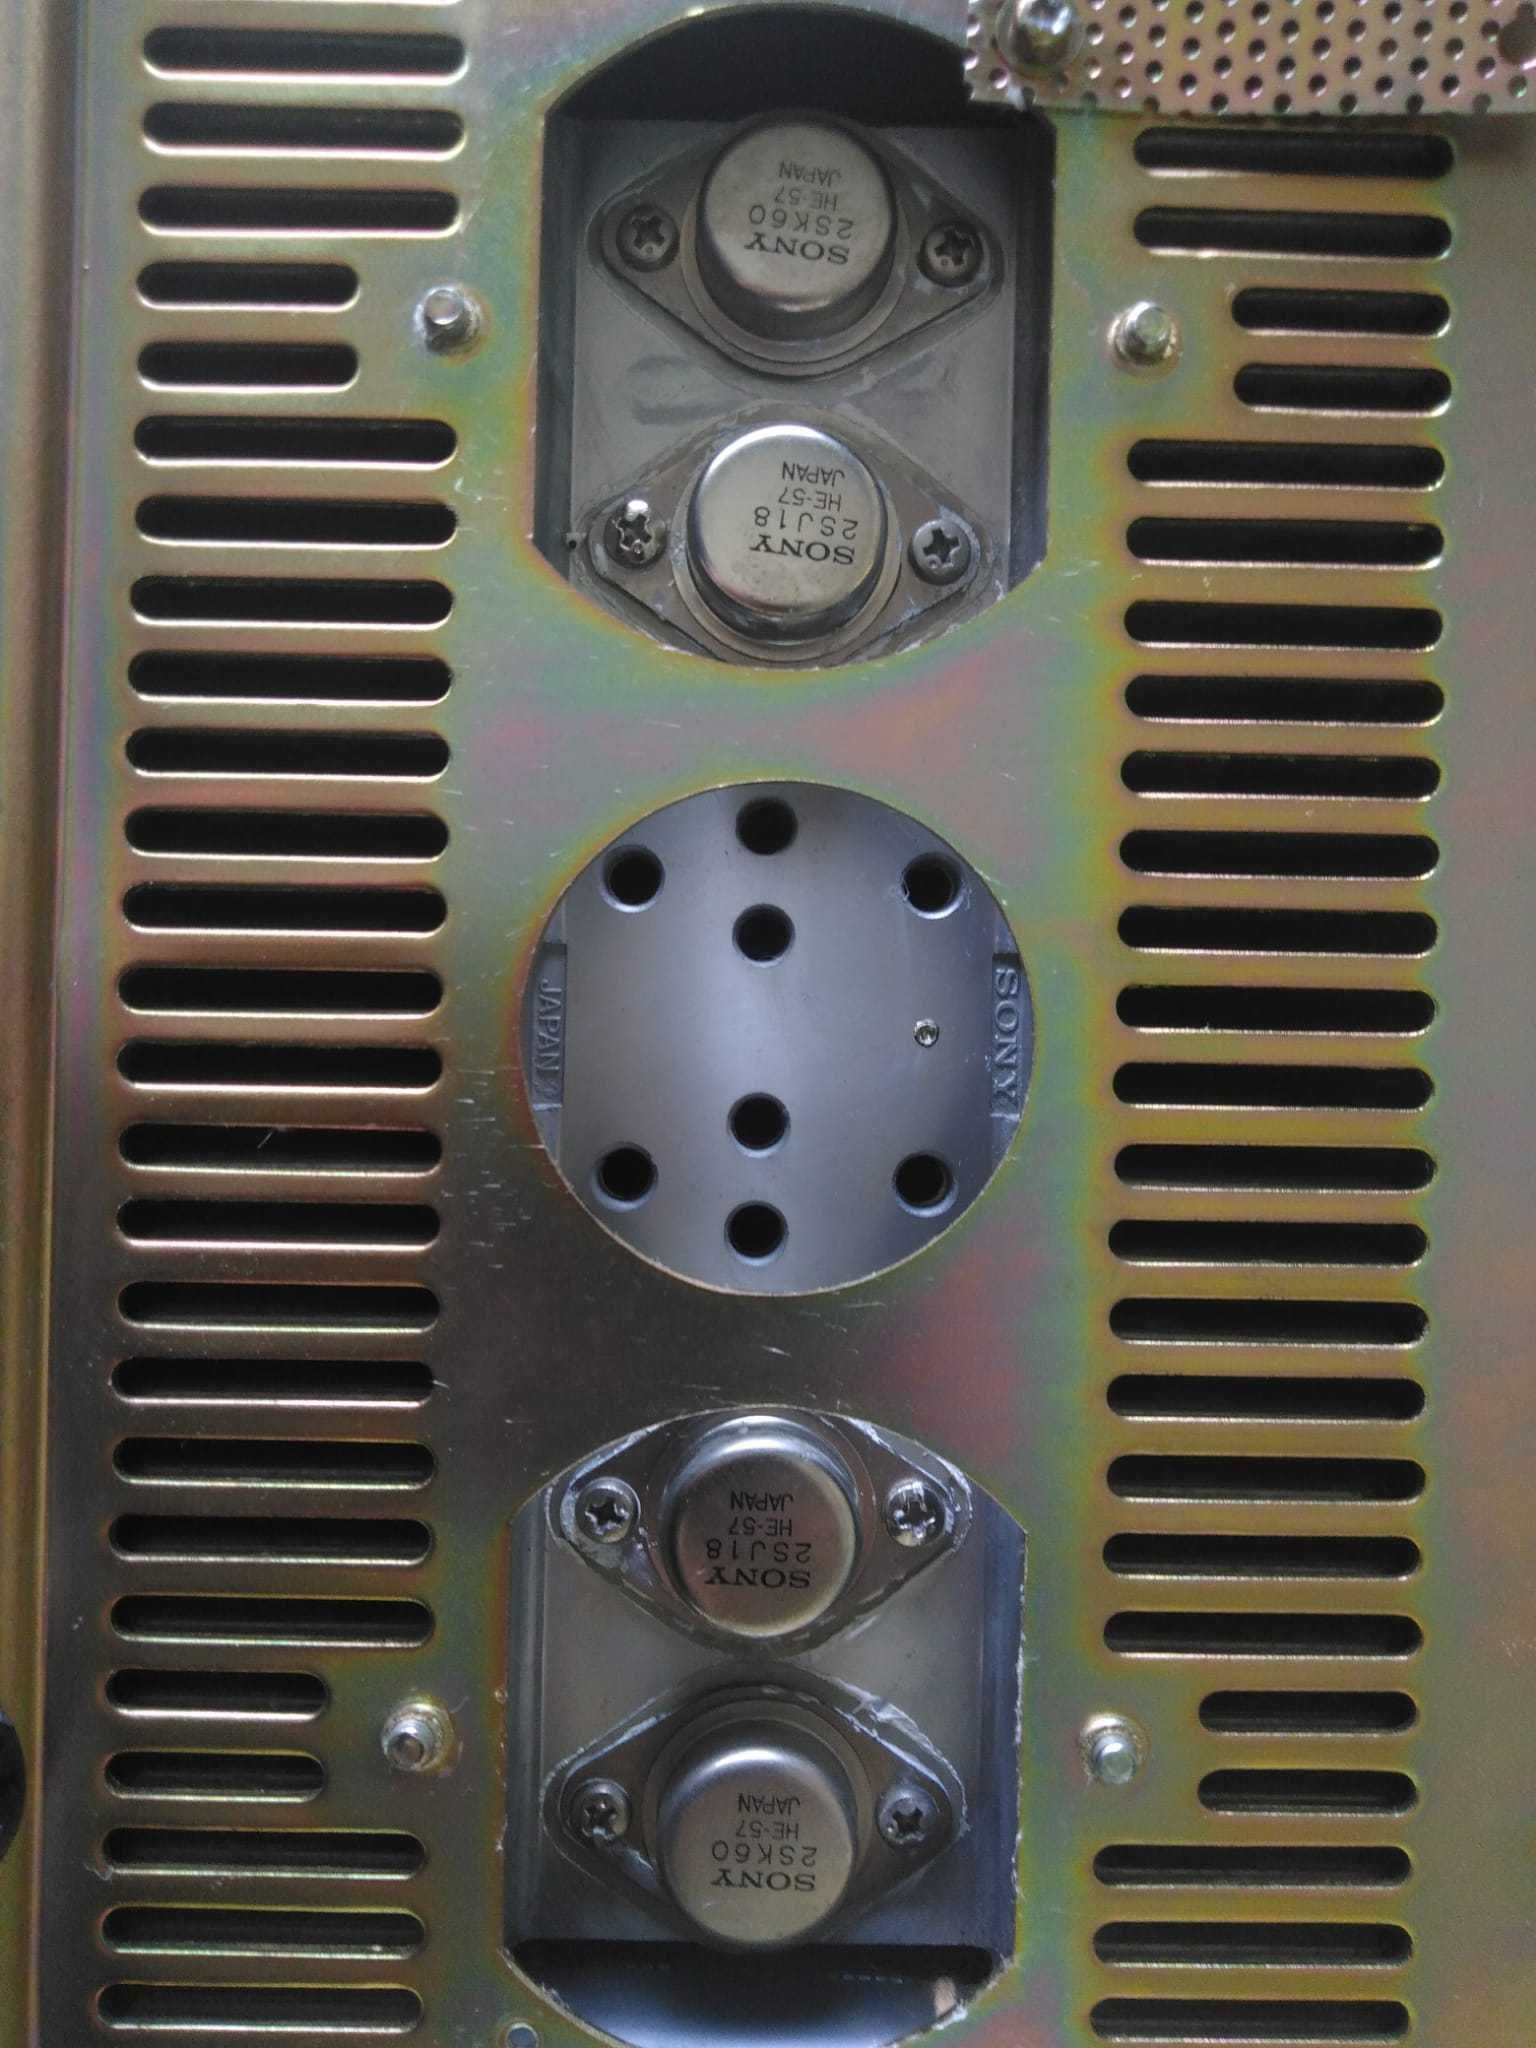 Amplificator Sony TA-4650 VFET